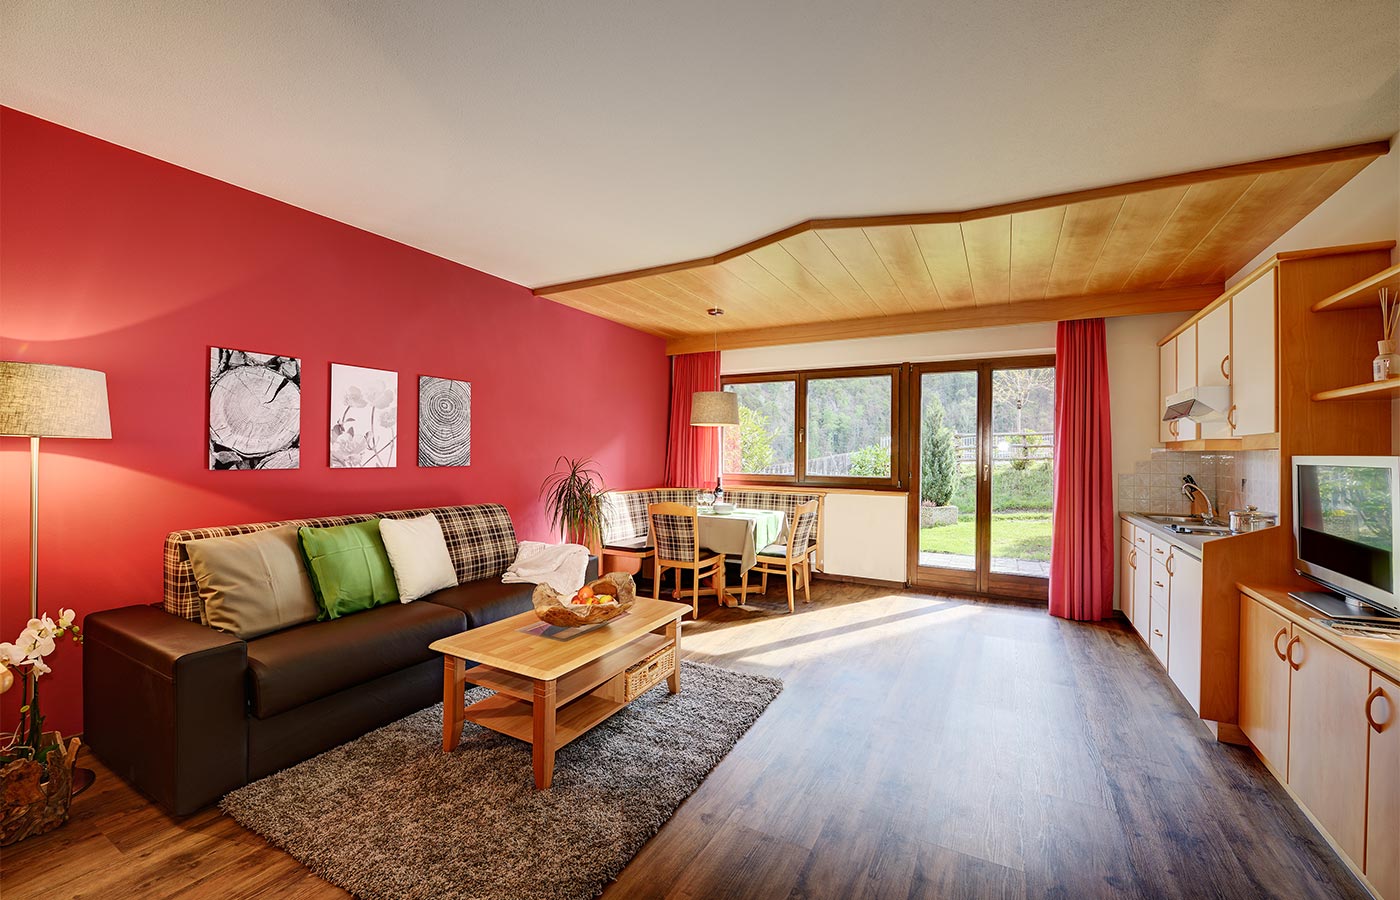 Gästewohnung im Hotel Alpenhof im Passeiertal mit hölzerner Einrichtung, roter Wand, großem Divan, Kochfläche und Tür zum Garten